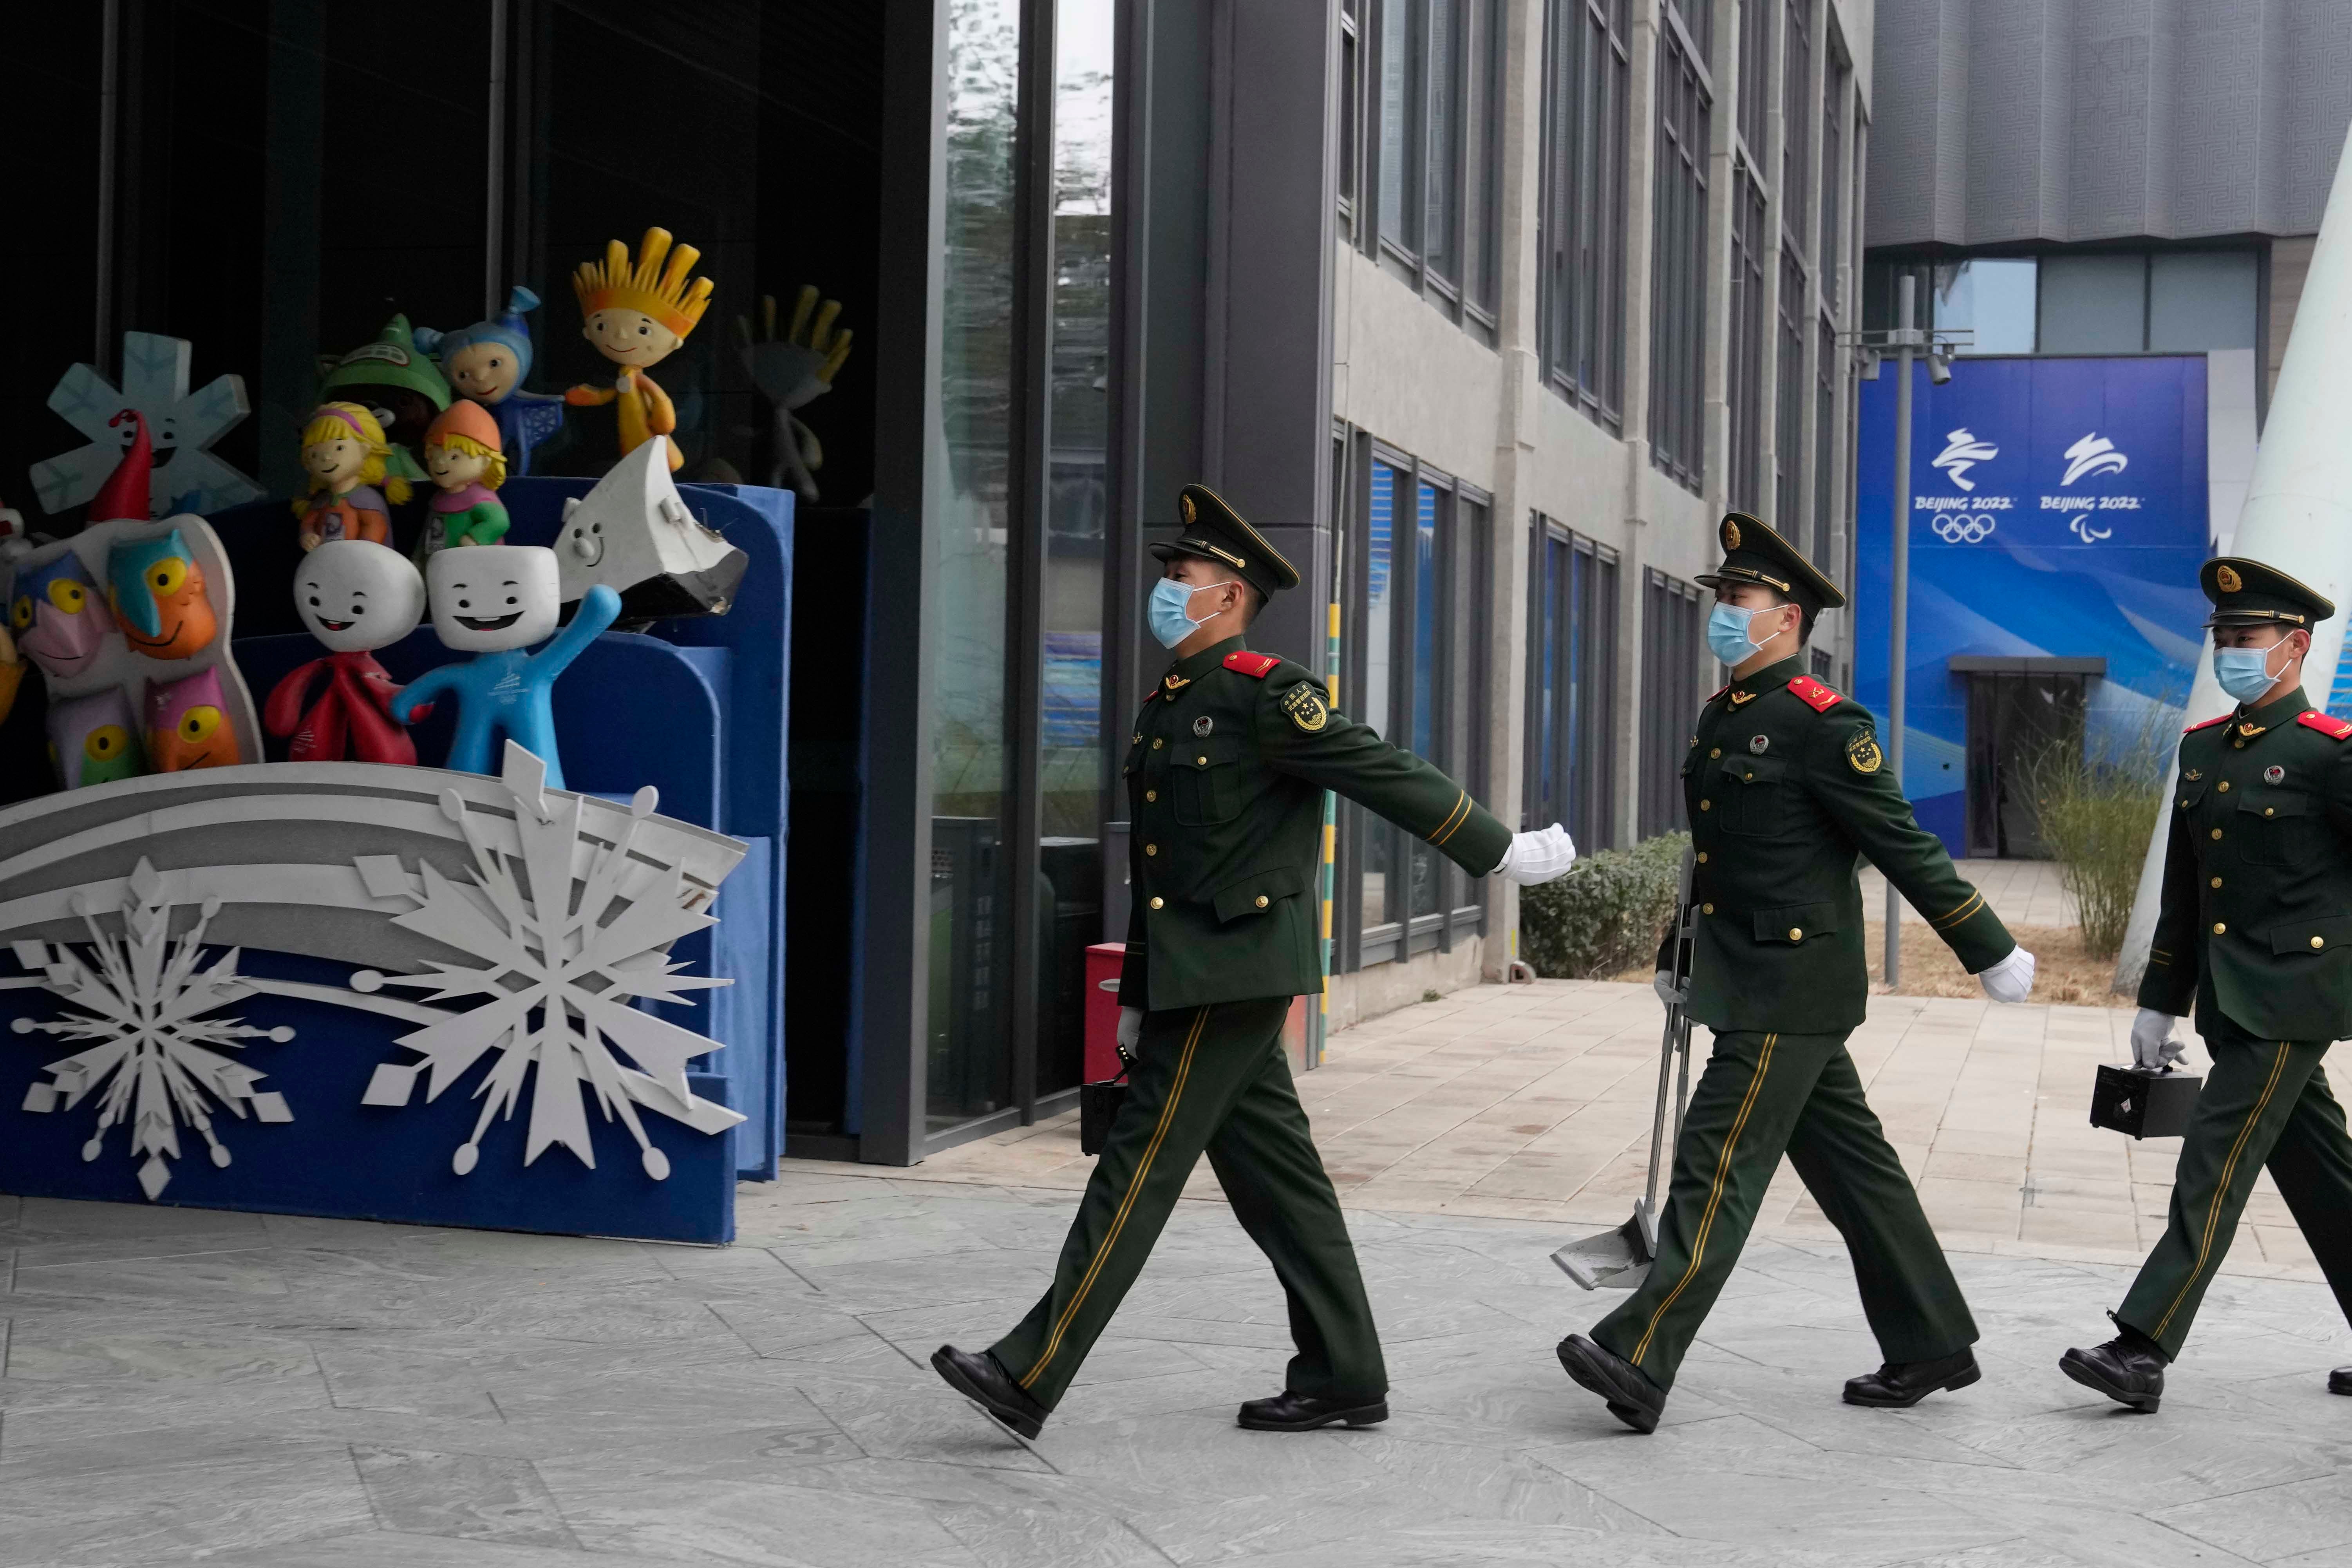 عناصر من الشرطة شبه العسكرية الصينية يسيرون بجانب دميات رسمية للألعاب الأولمبية الشتوية في منتزه شوغانغ في بكين، الصين، 21 يناير/كانون الثاني 2022. © 2022 أسوشيتد برس/نغ هان غوان 